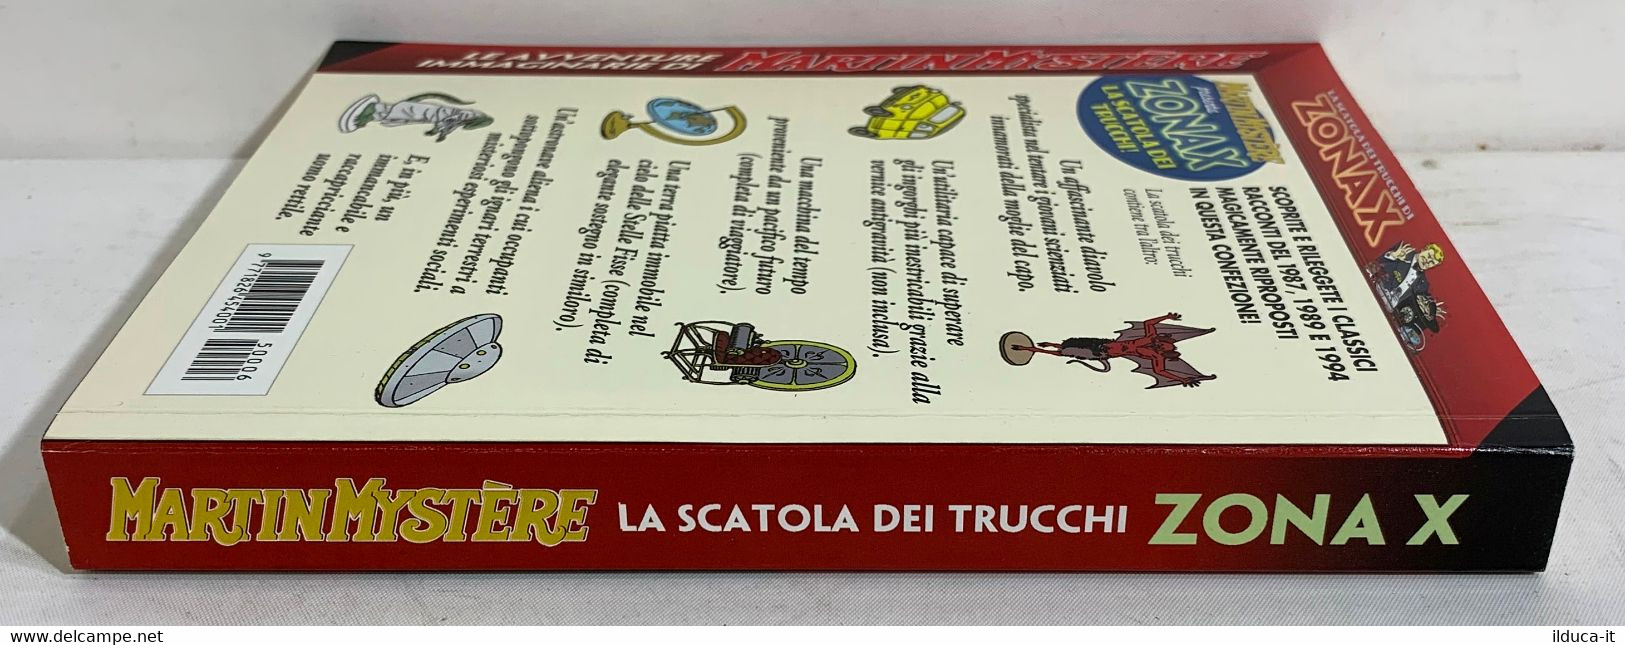 I100881 Maxi Martin Mystere N. 6 - Zona X La Scatola Dei Trucchi - Bonelli 2015 - Bonelli